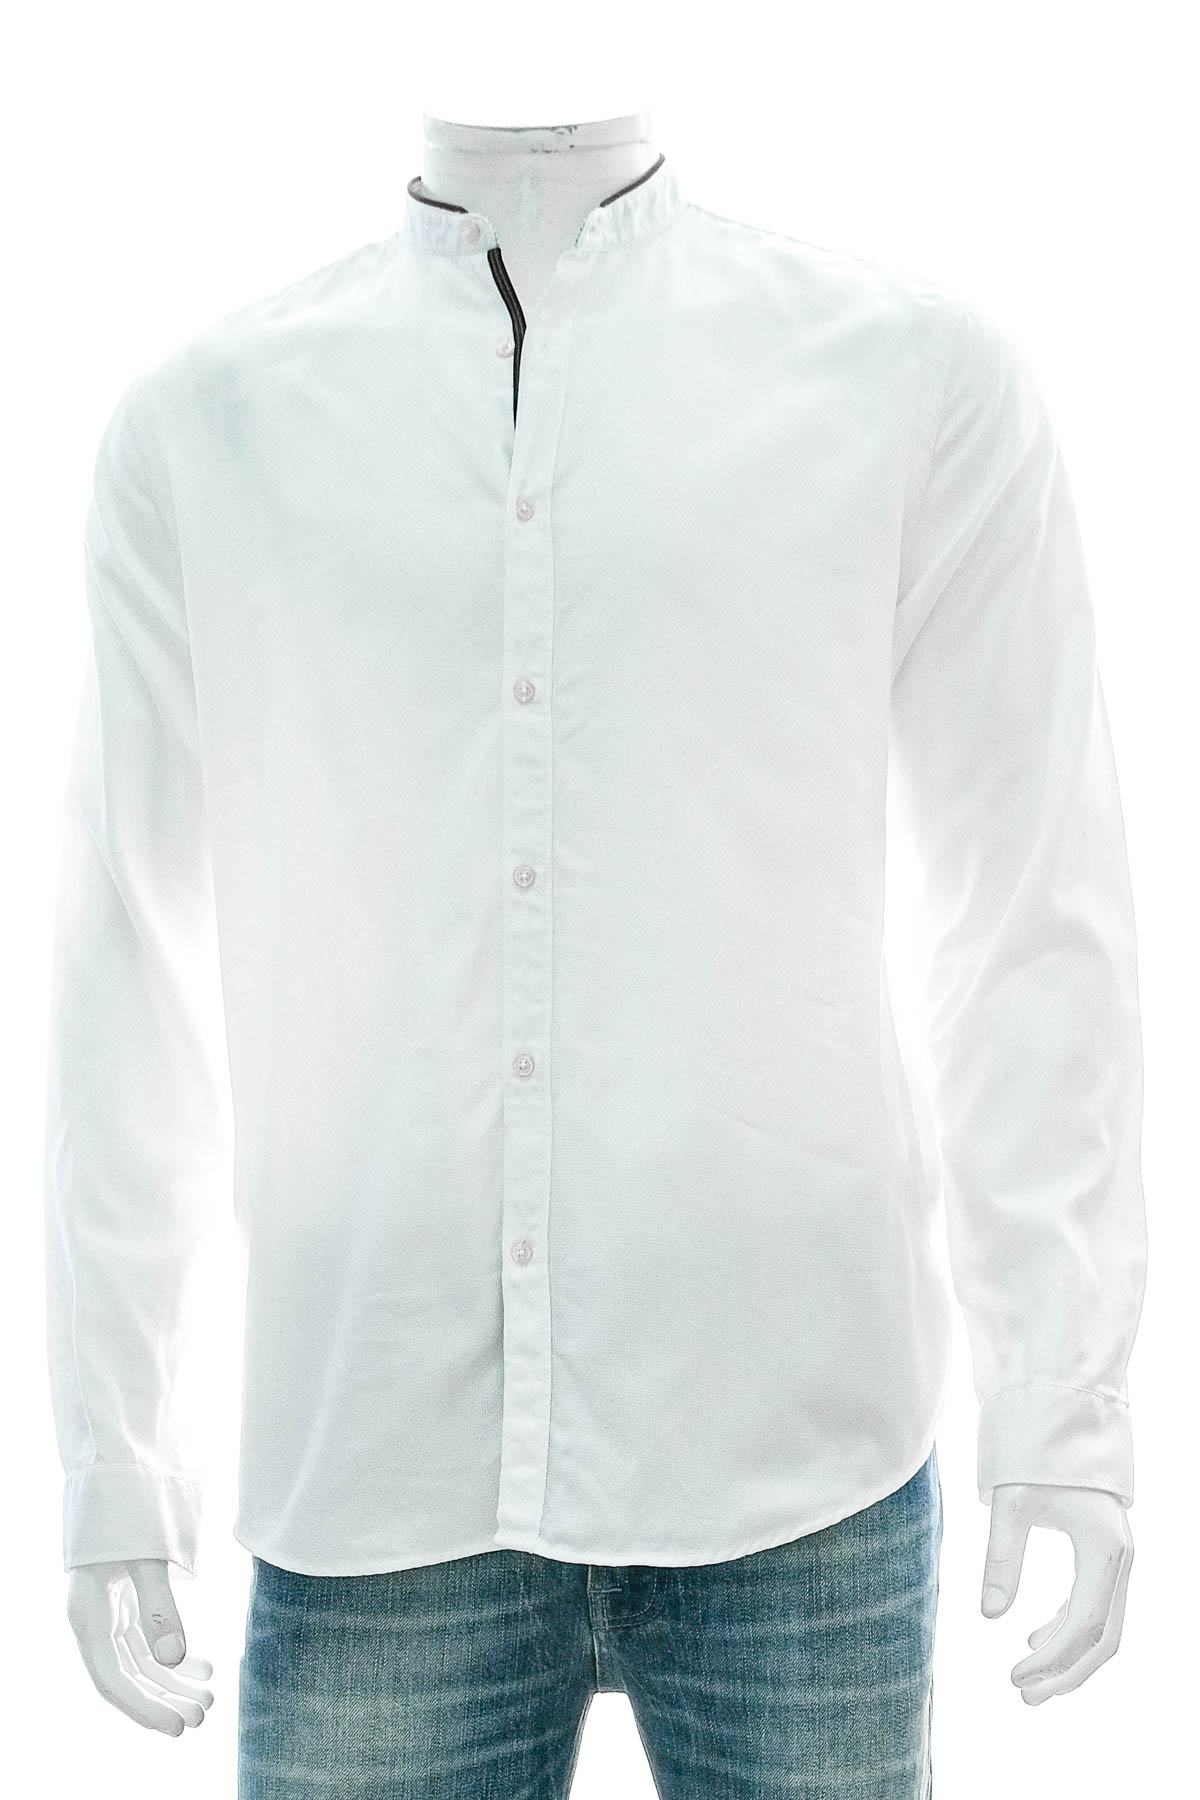 Ανδρικό πουκάμισο - ZARA - 0